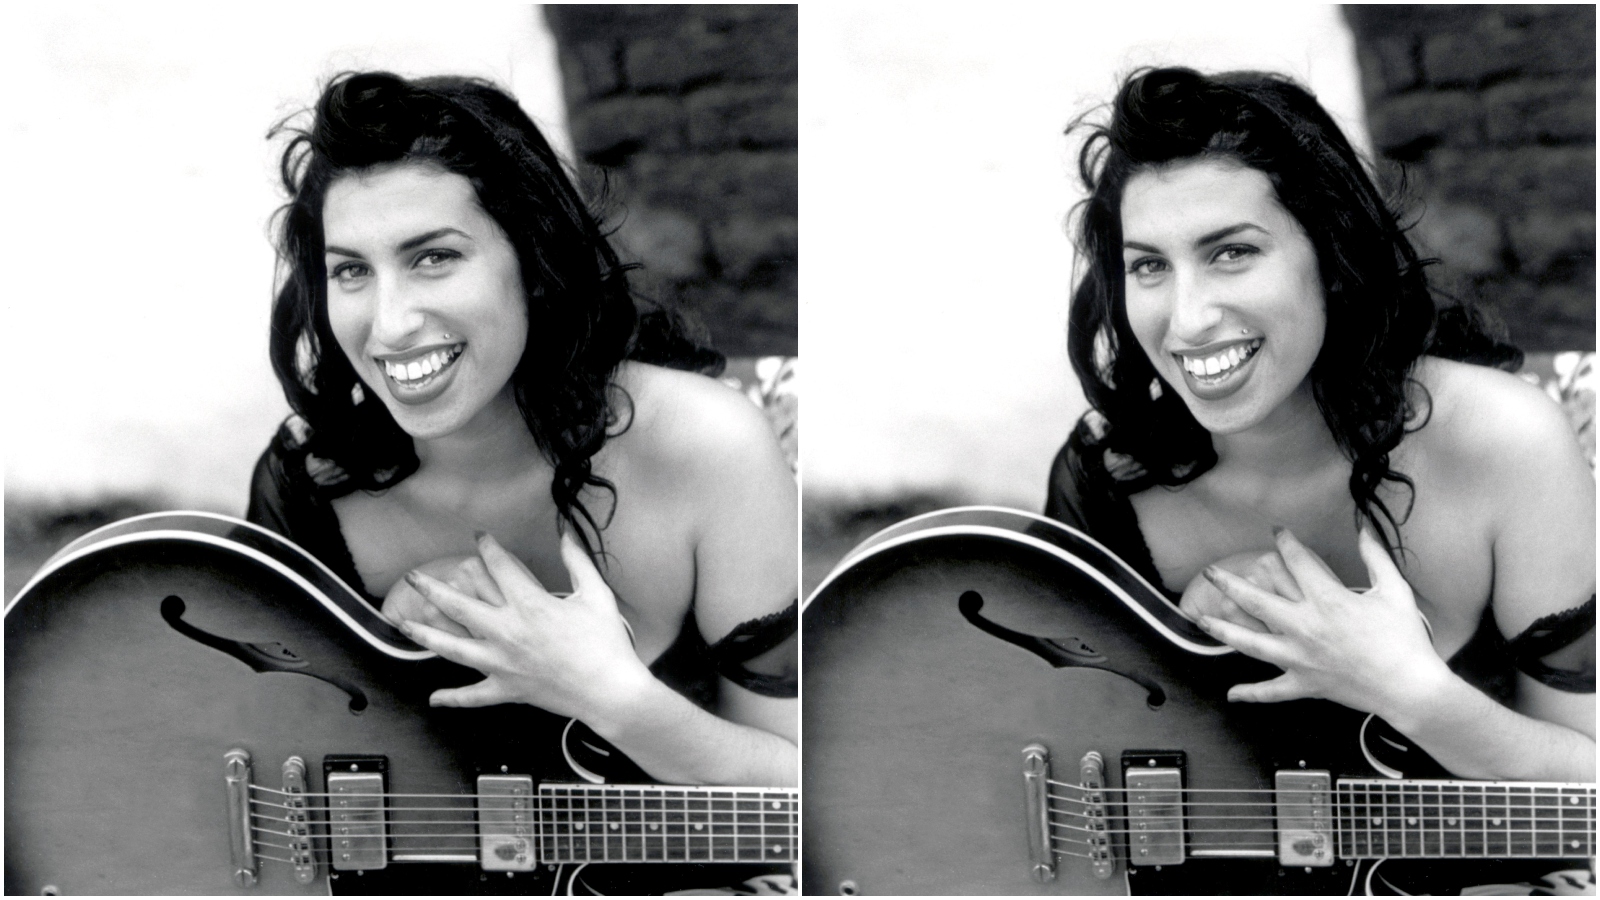 Izašao je dosad neviđeni spot Amy Winehouse u kojem pjevačicu vidimo u drugačijem i opuštenom izdanju